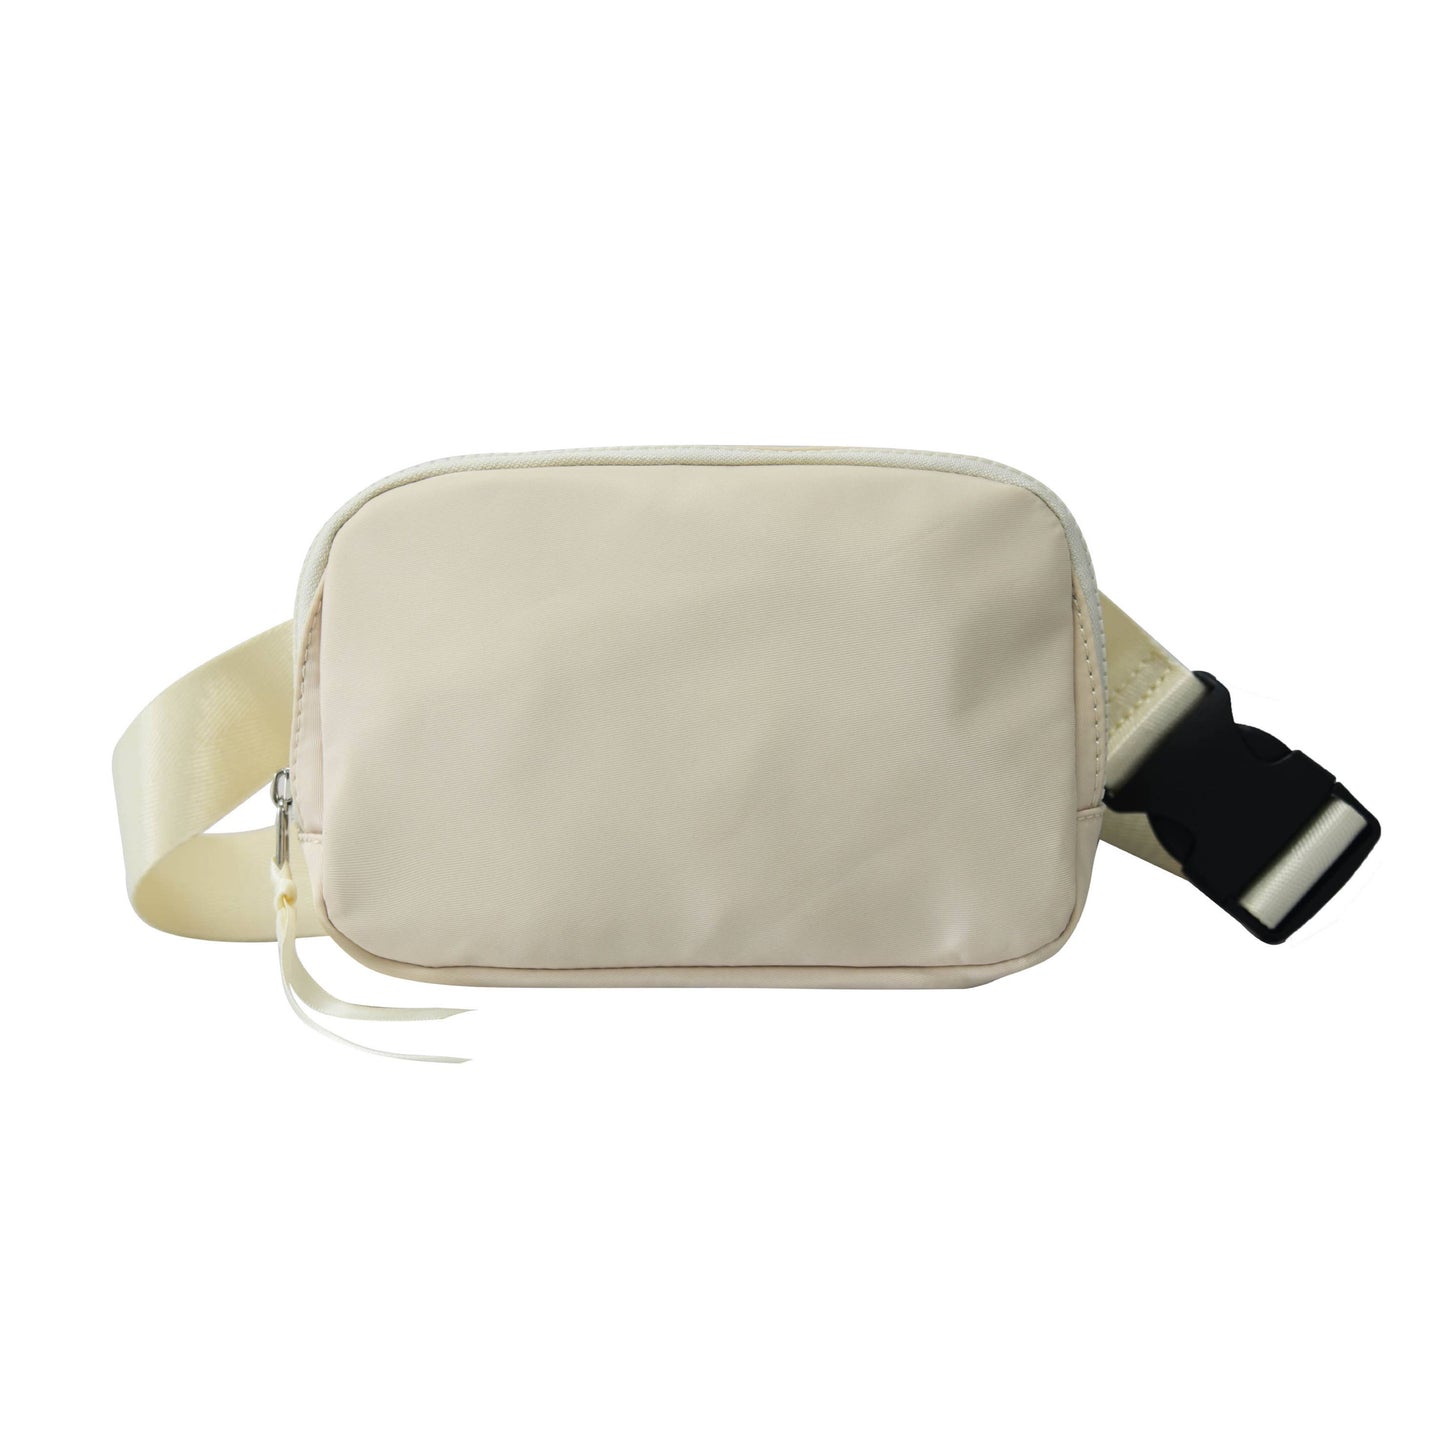 Nylon Belt Bag | Sling Bag | Waist Bag